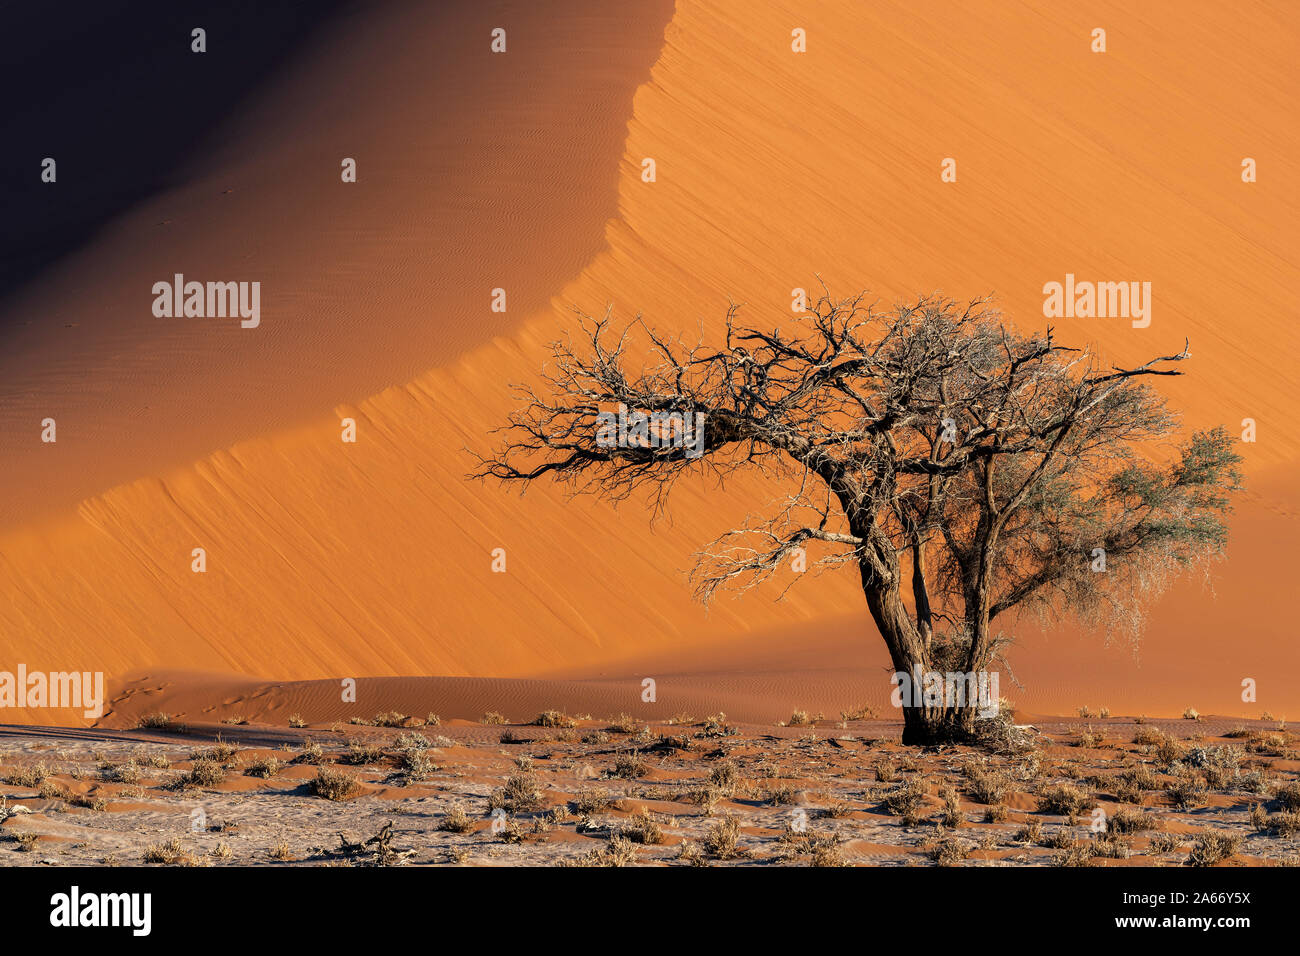 Sand dune, Namib-Naukluft National Park, Sesriem, Namibia Stock Photo